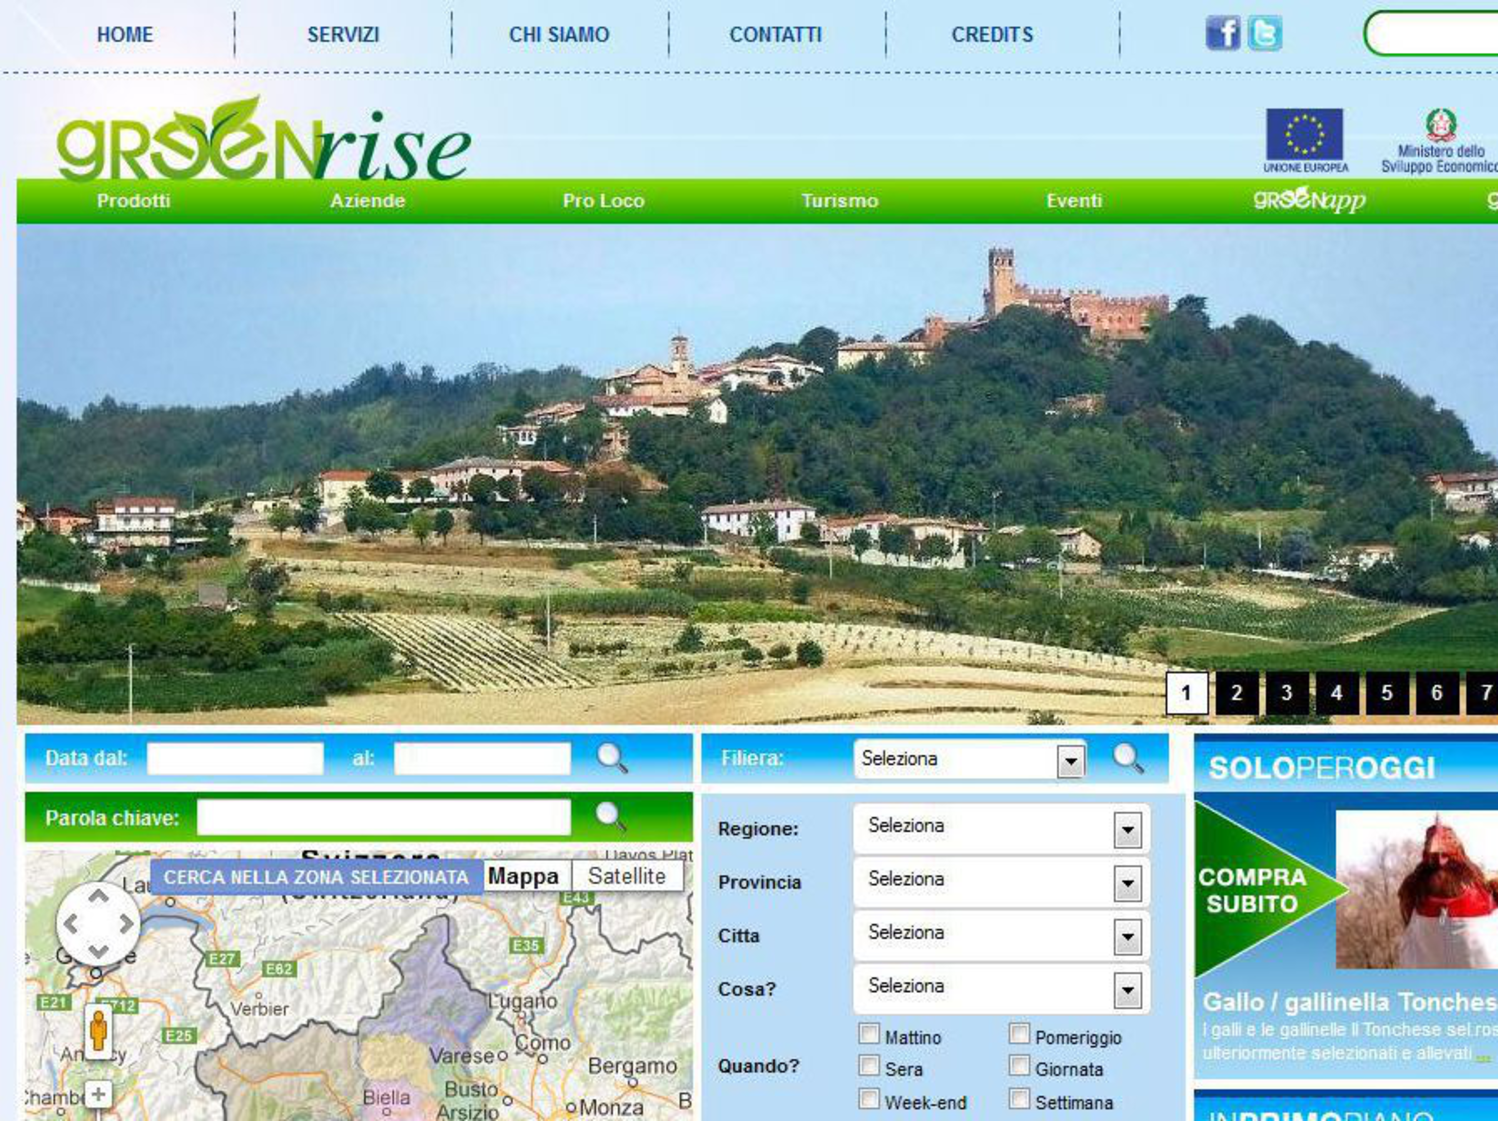 Cortanze presenta GreenRisevetrina on line per imprese ed eventi